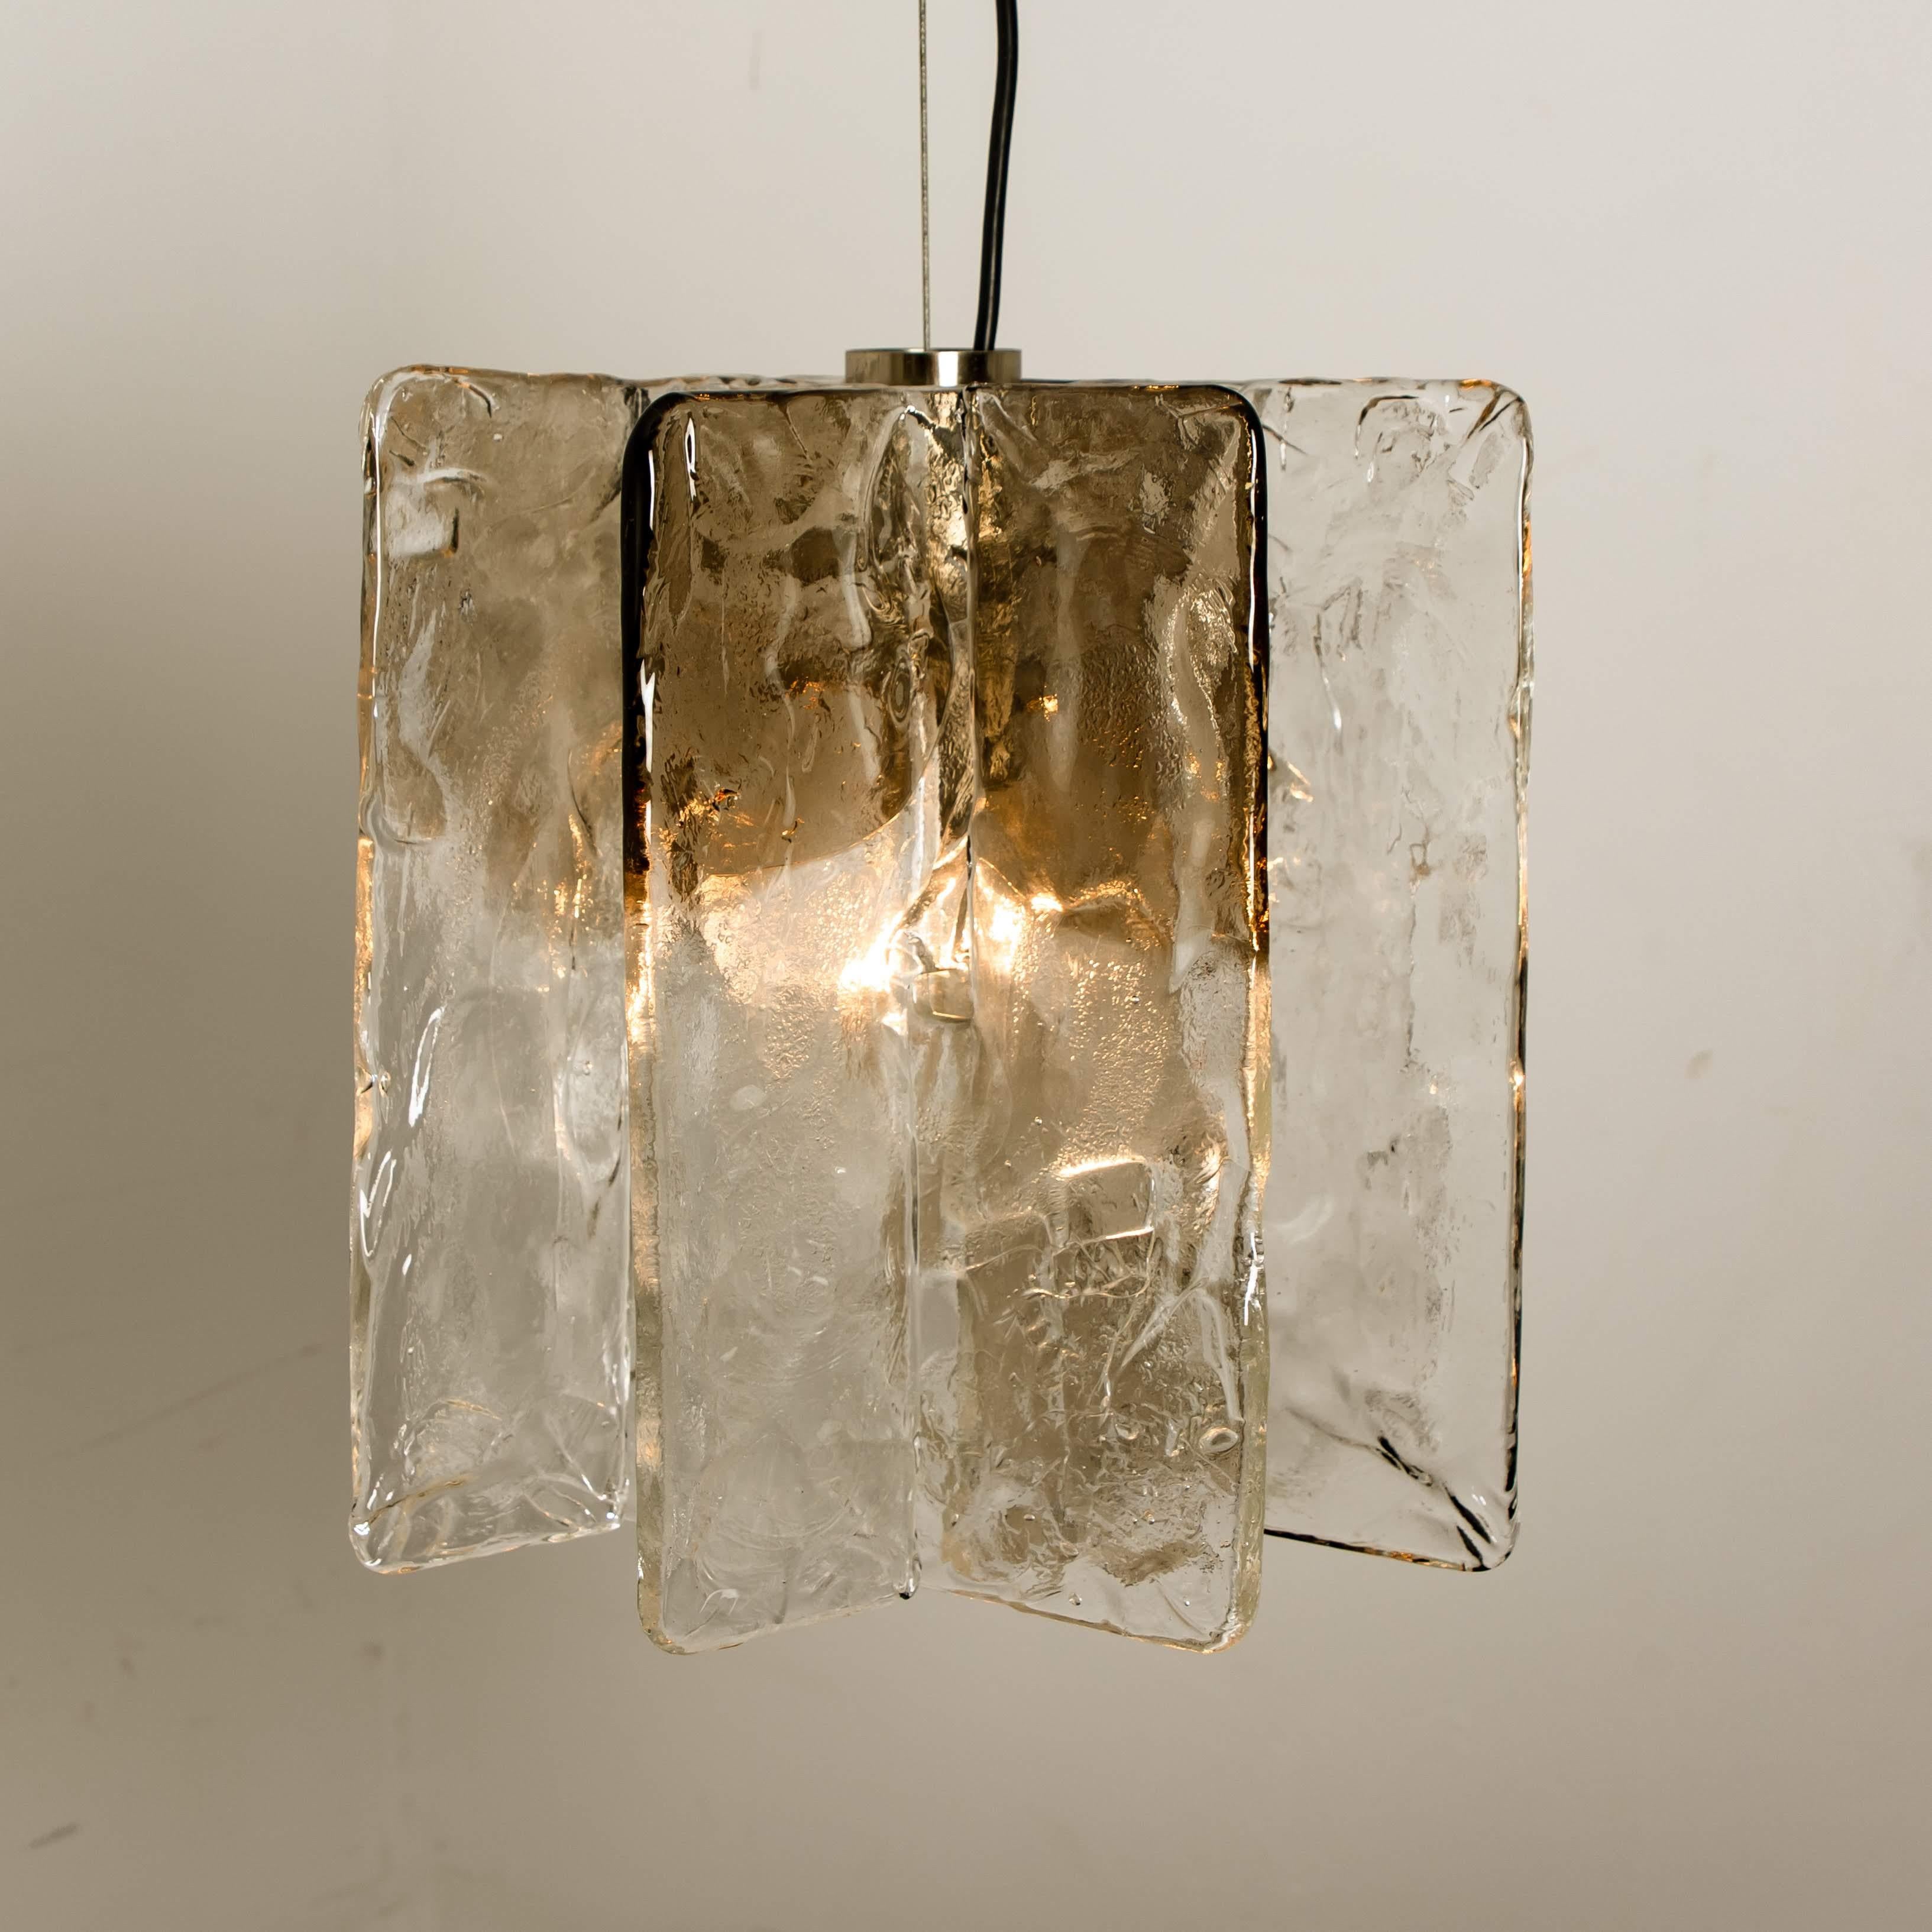 Kronleuchter von Carlo Nason für Mazzega, 1970er Jahre. Die Leuchte besteht aus vier 0,5 cm dicken Glasplatten aus klarem und geräuchertem Glas, die auf einem vernickelten Sockel montiert sind. Sie hat eine E27-Fassung (max. 80 Watt).

Schwere